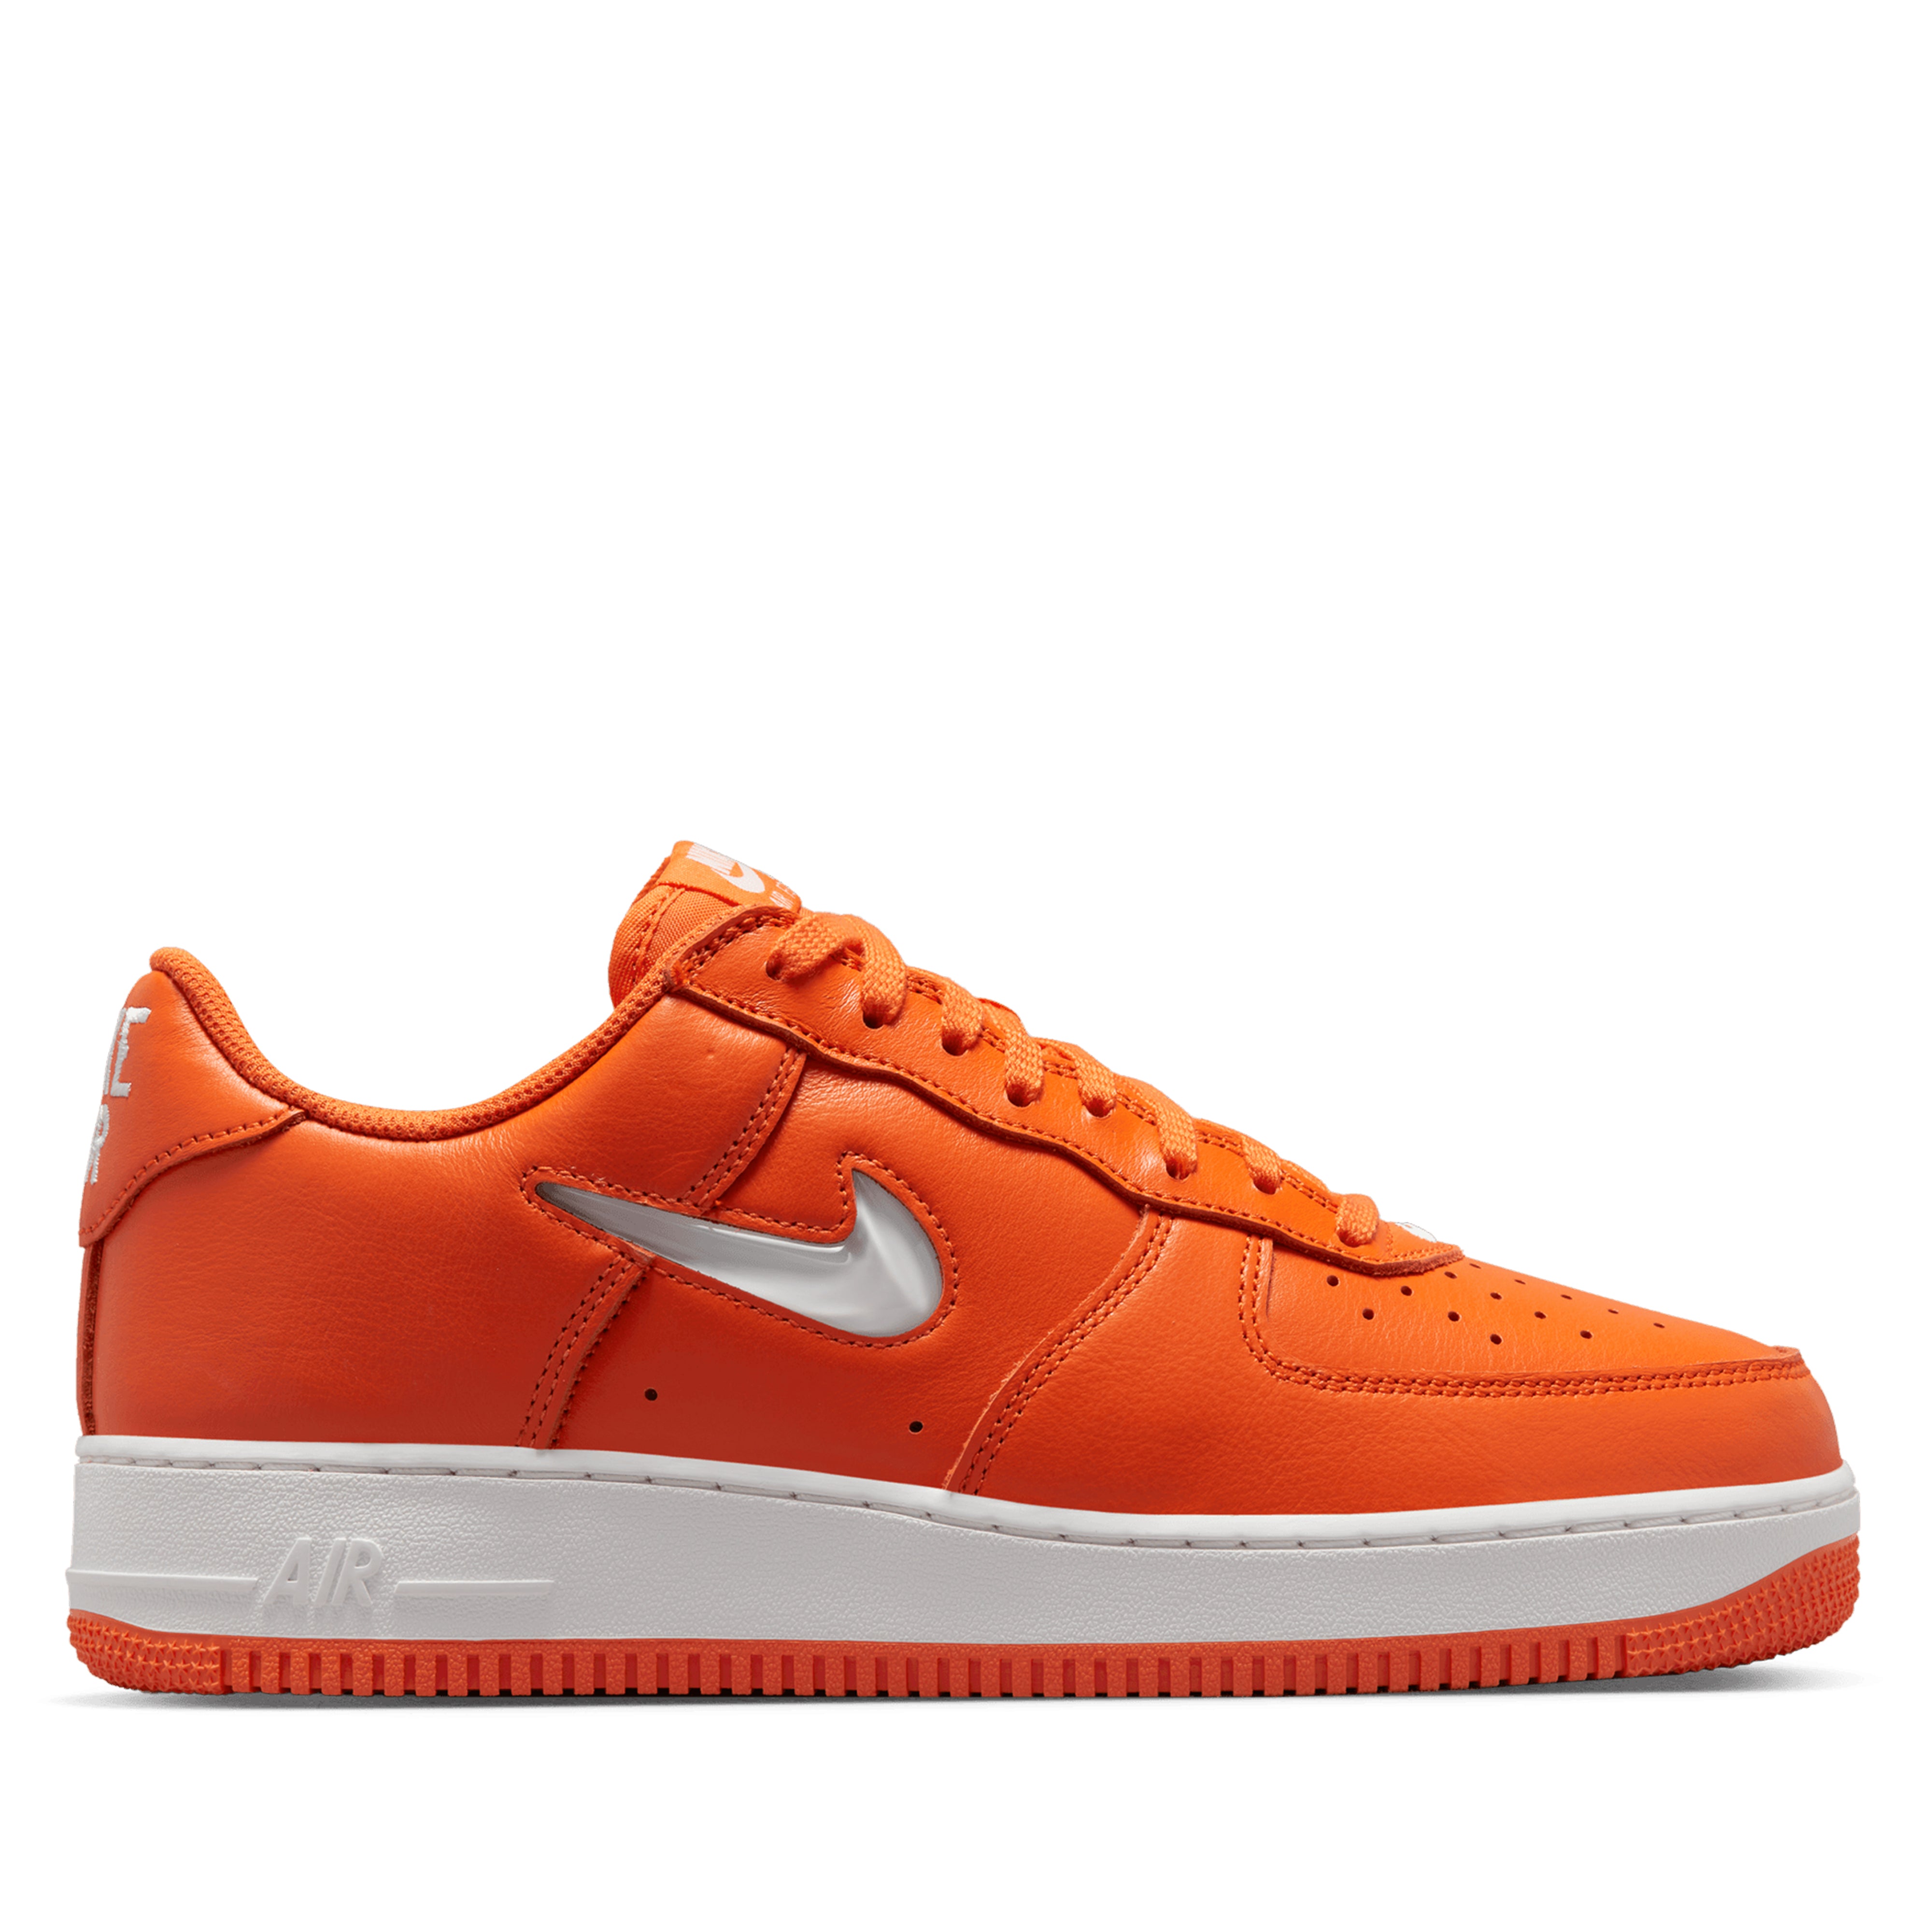 Buy Nike Air Force 1 Sneakers Low LV8 Black Orange Peel Mens 11 Online in  India 